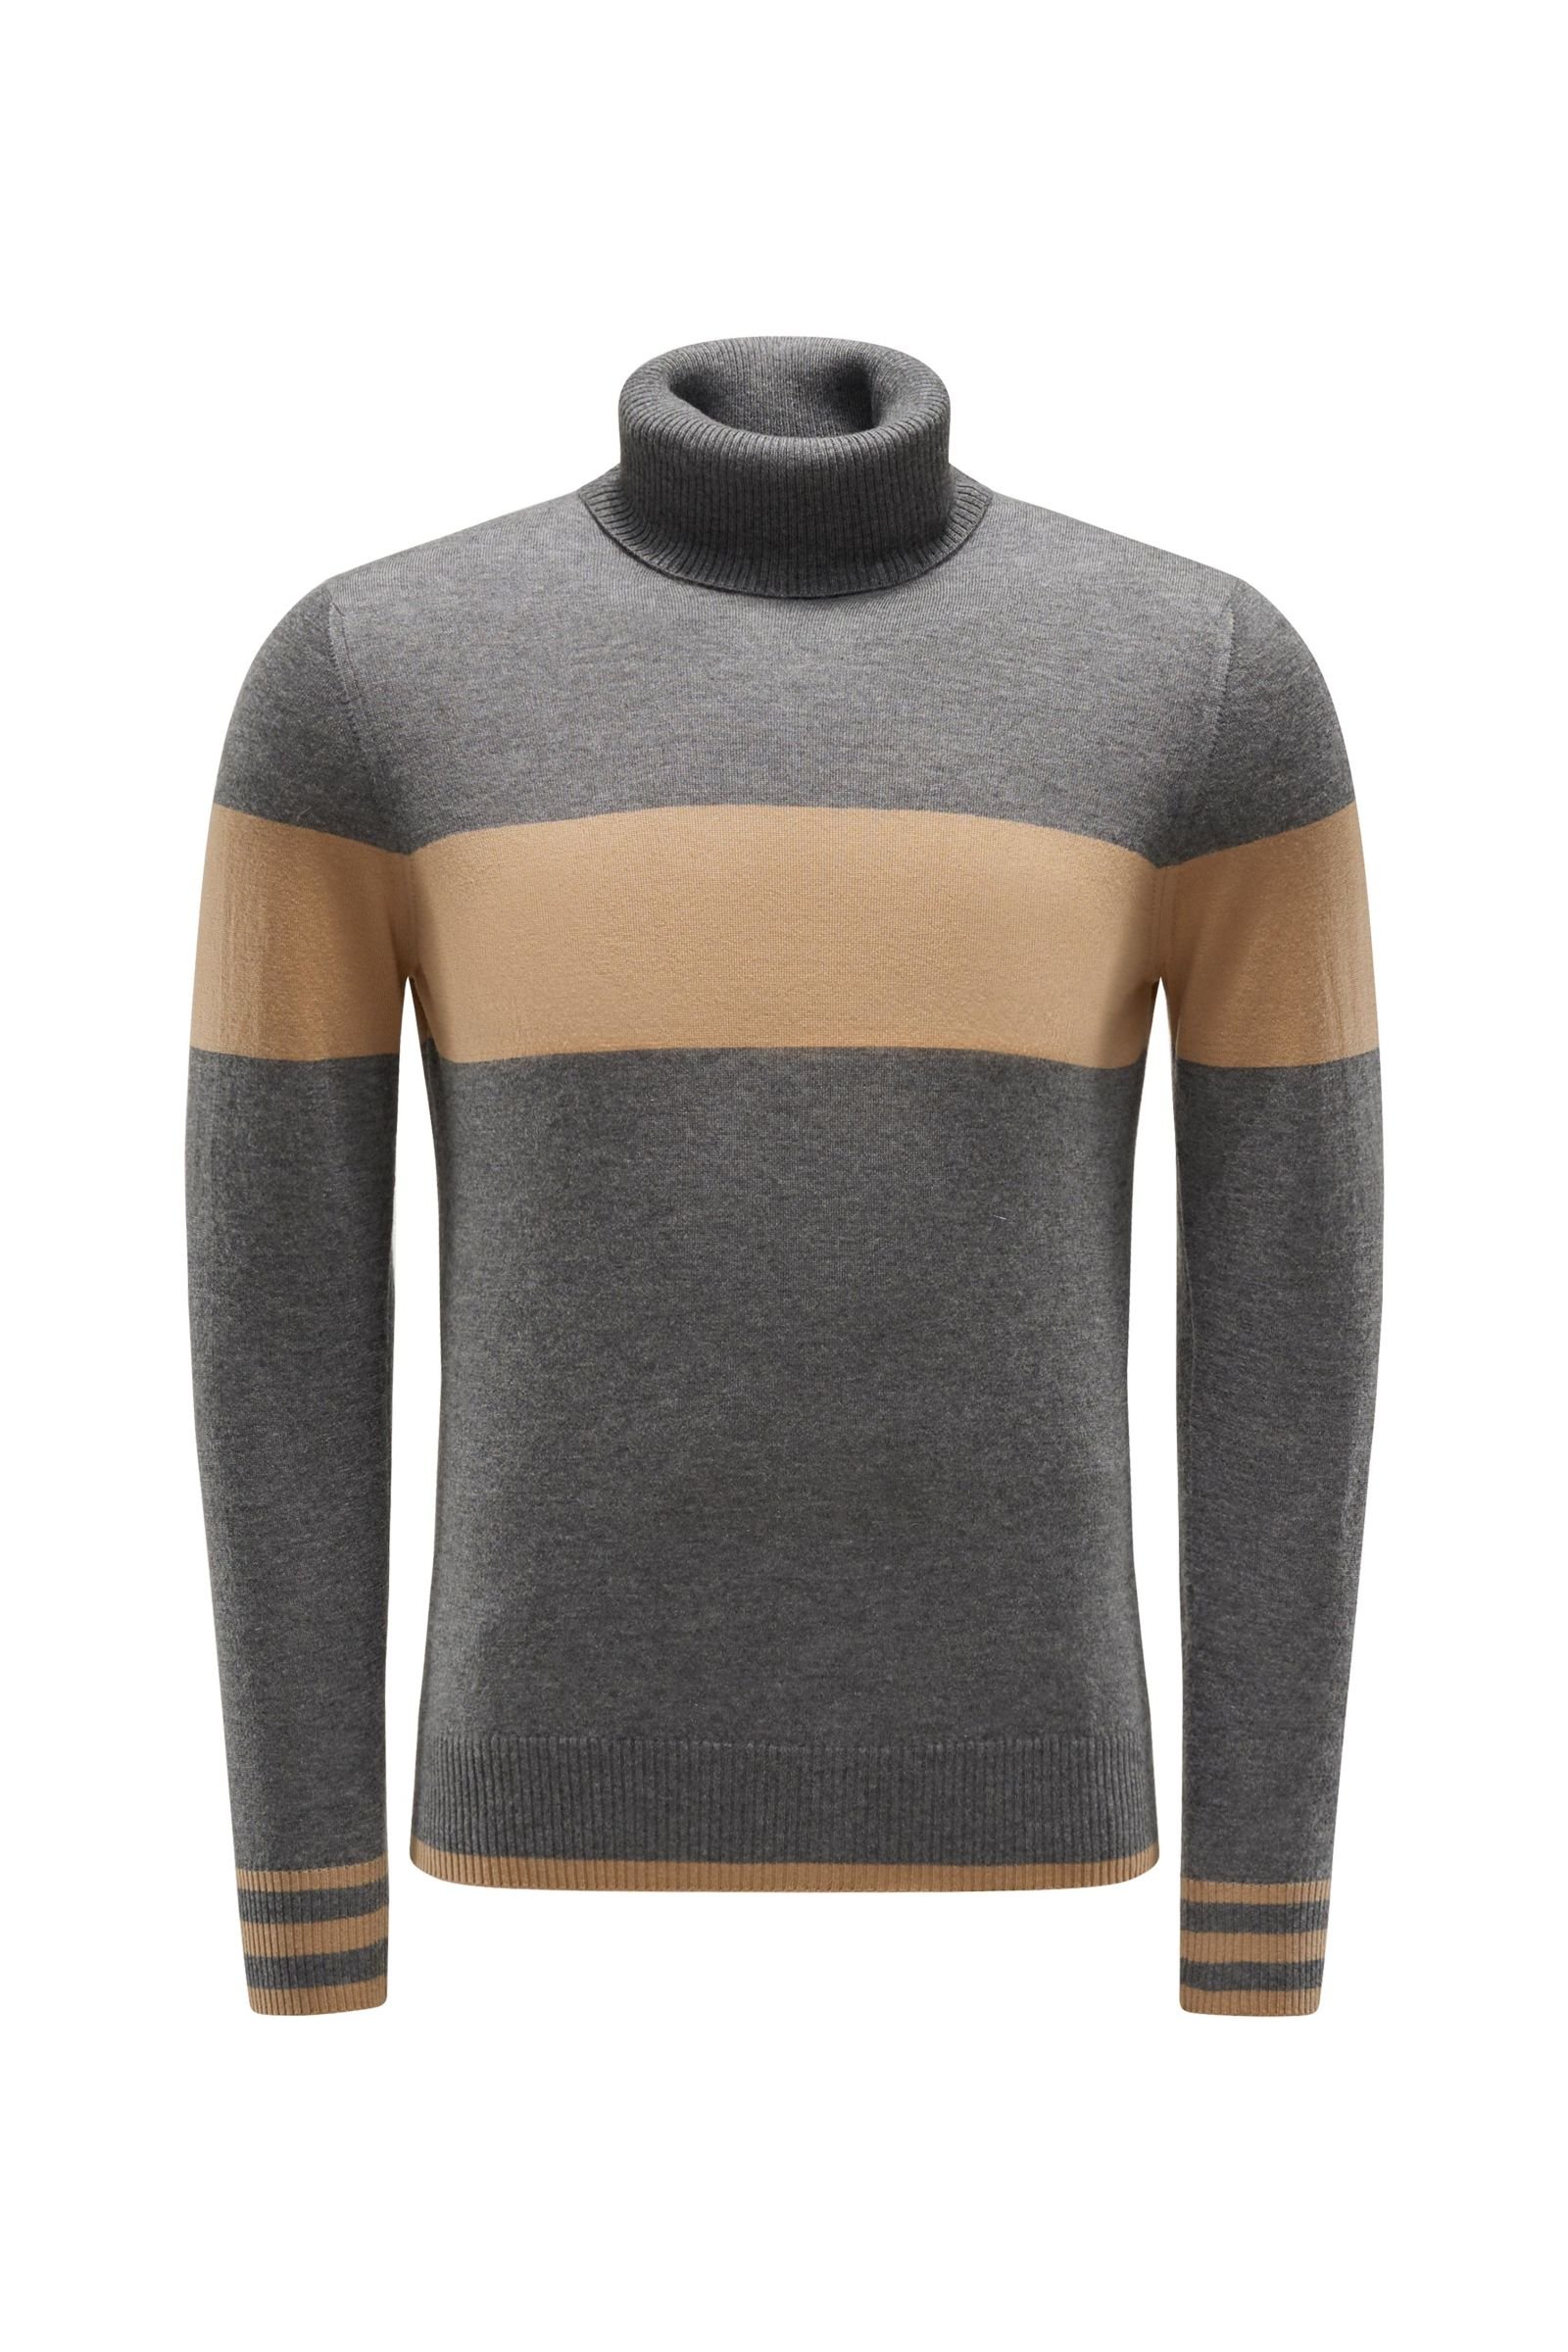 Cashmere turtleneck jumper 'No.10' grey/light brown striped